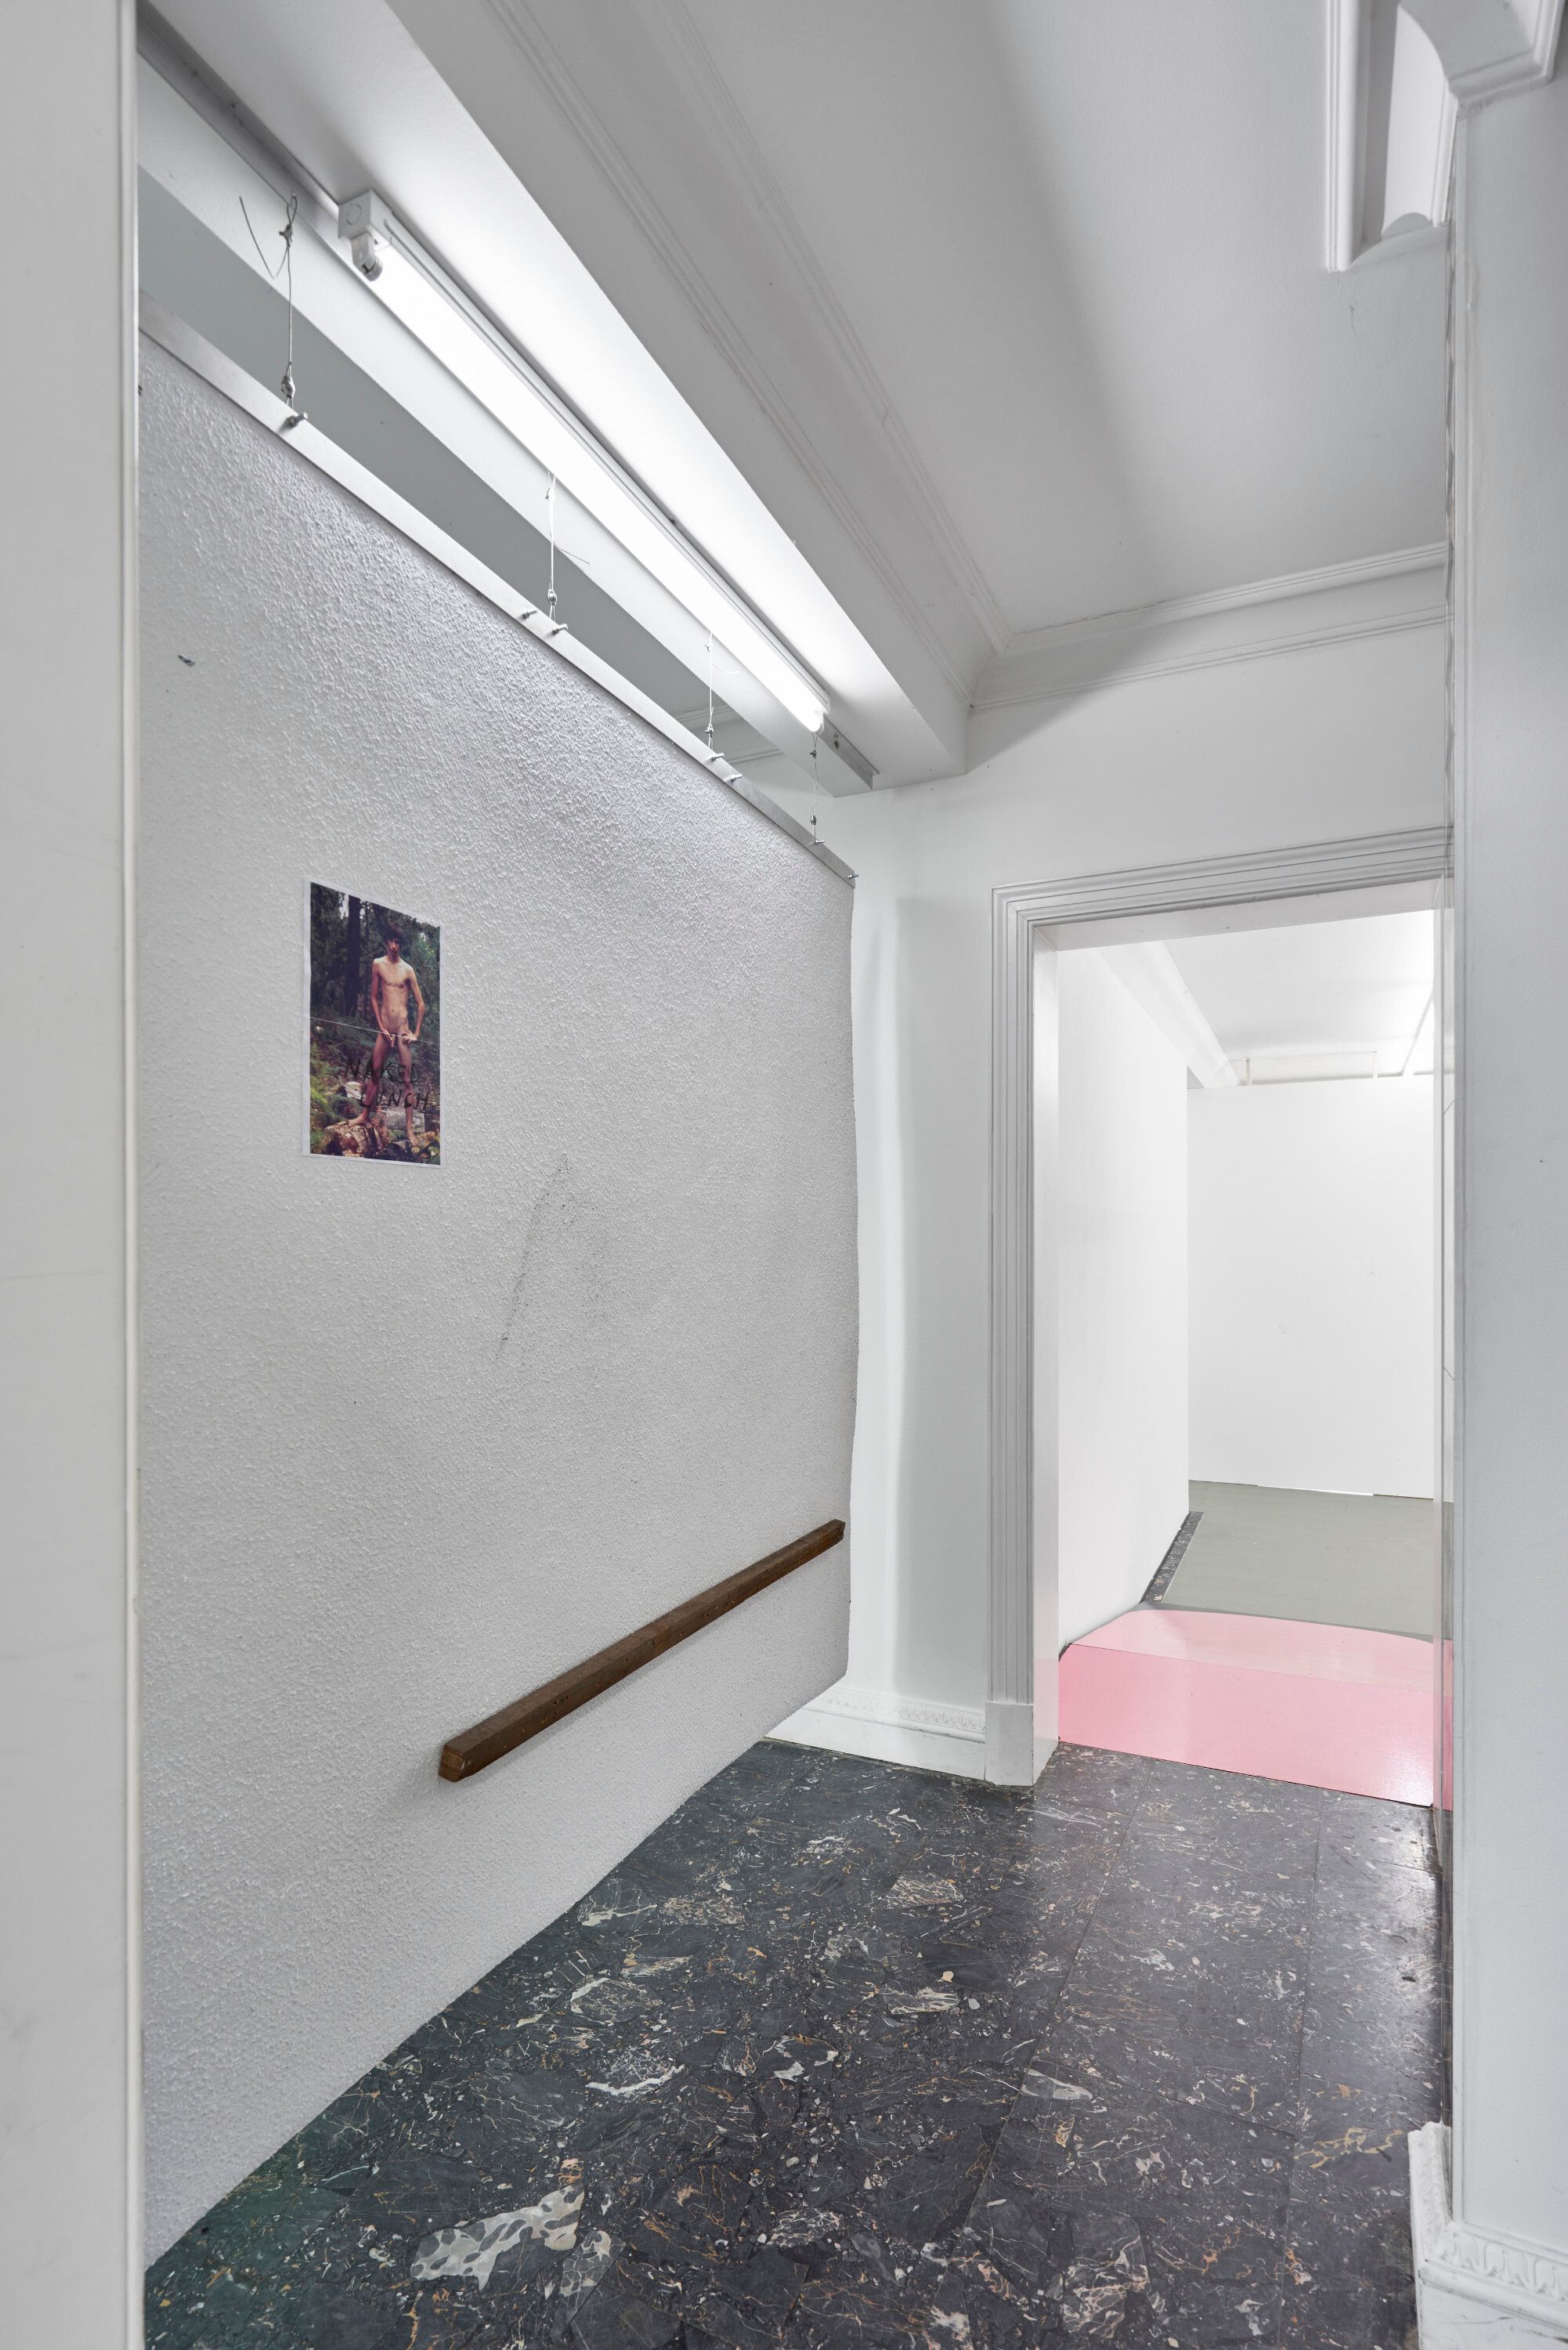 Installation view, Gerry Bibby, Henrik Olesen, Conversation in a Yes/No Landscape, Deborah Schamoni, 2016